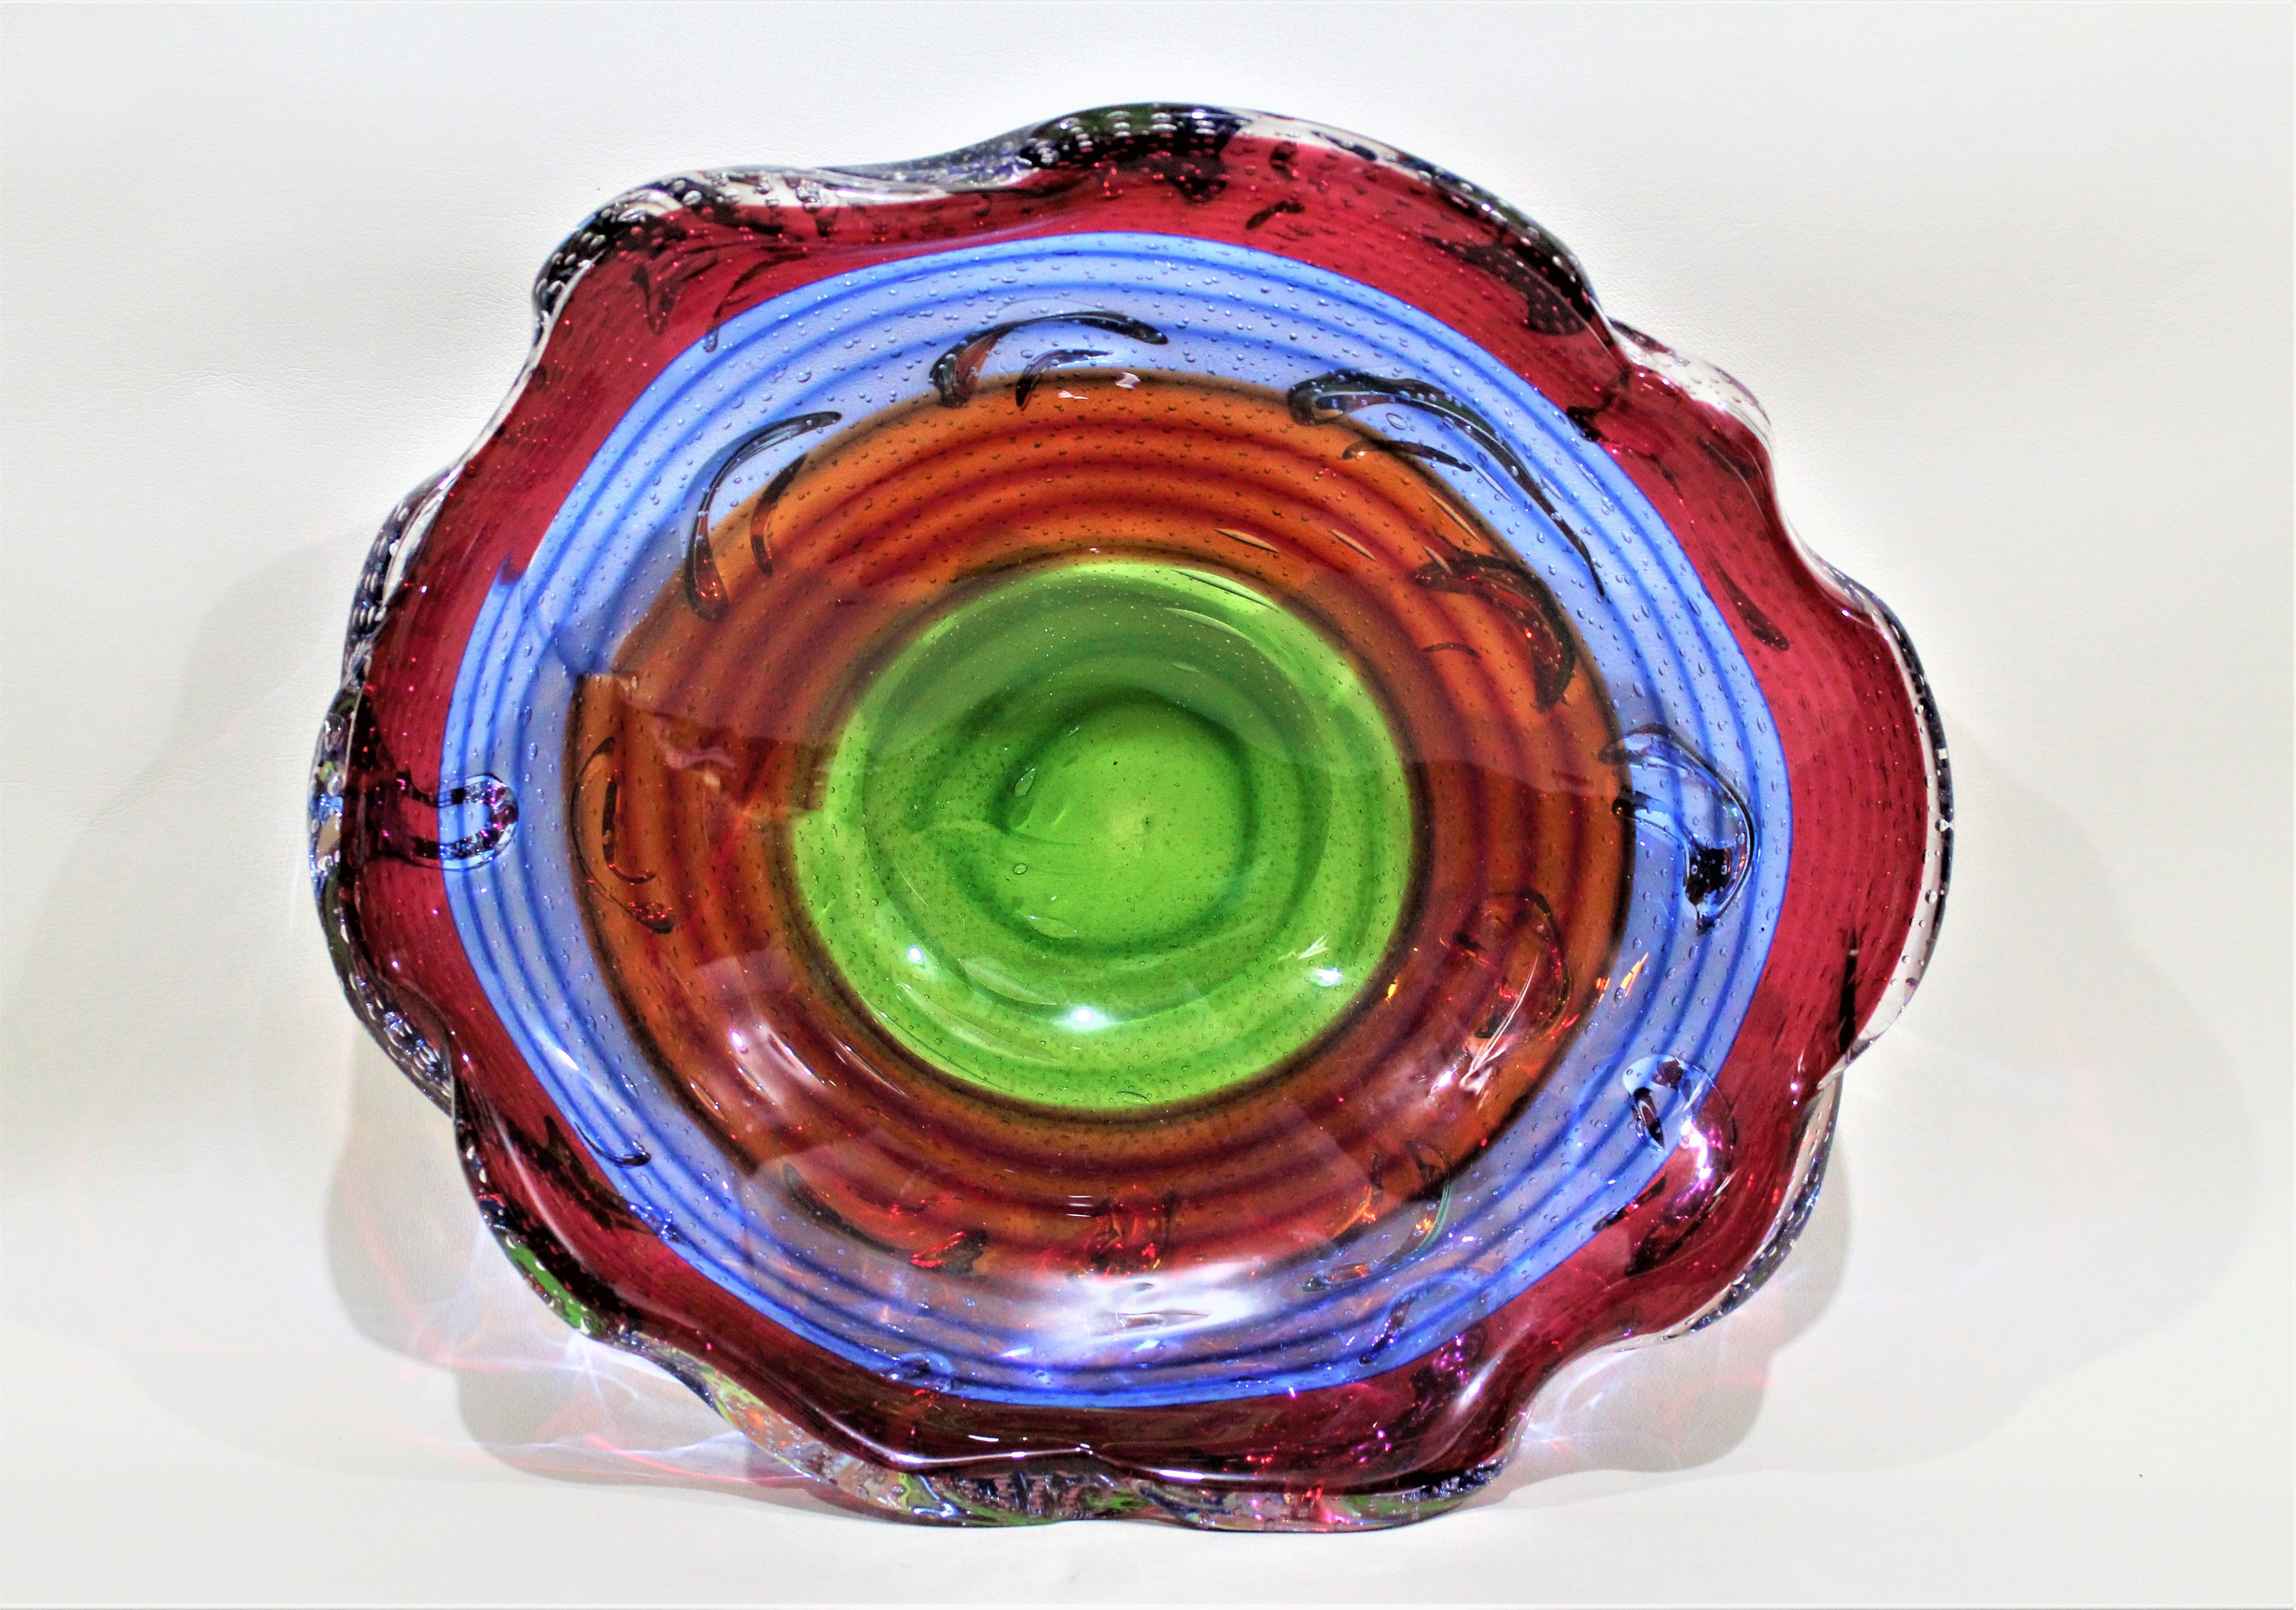 Construit en cordage de verre multicolore, ce bol enroulé a très probablement été fabriqué par un artisan italien au milieu des années 1960. Le bol n'est pas signé, il est donc impossible de déterminer l'artiste ou le fabricant exact. La coupe n'est